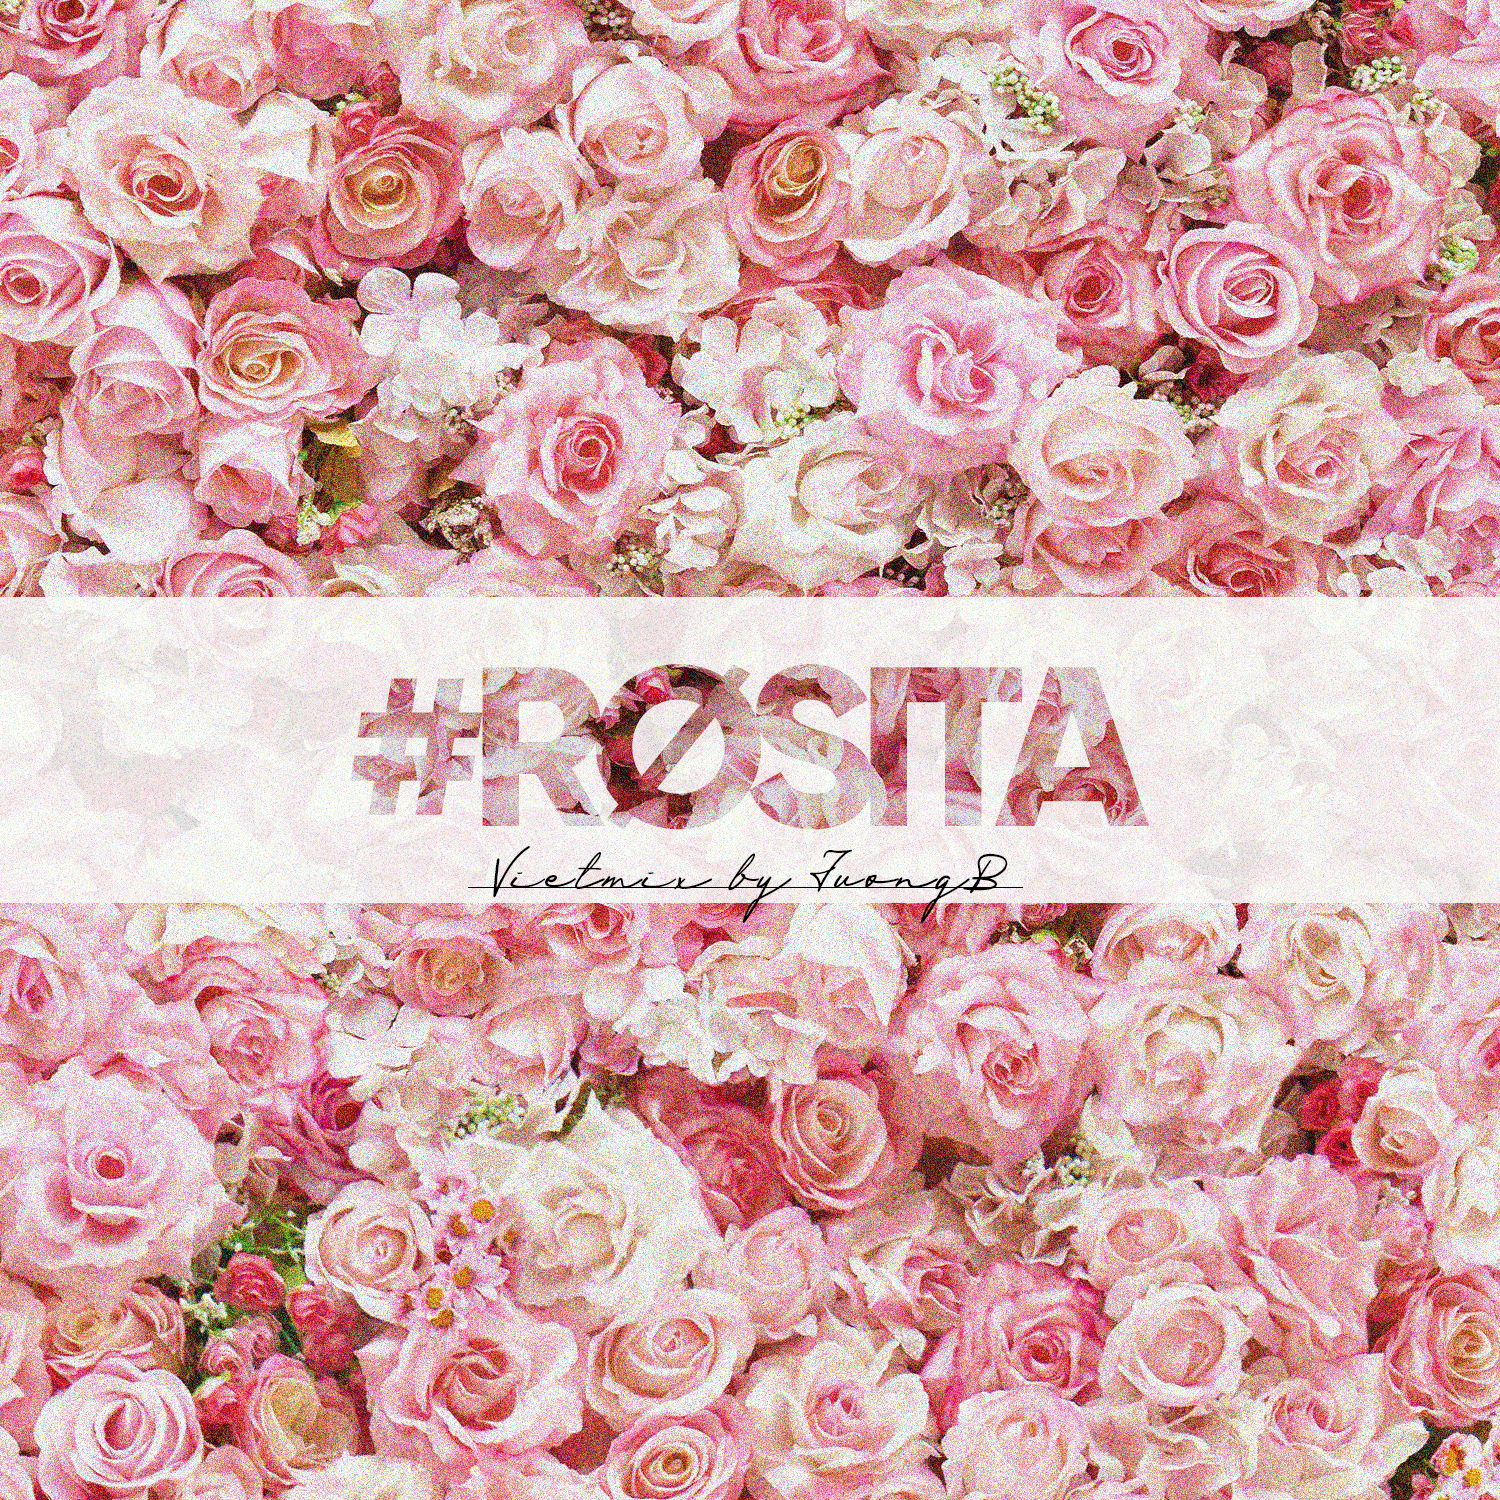 Stiahnuť ▼ #Rosita - Vietmix By JuongB